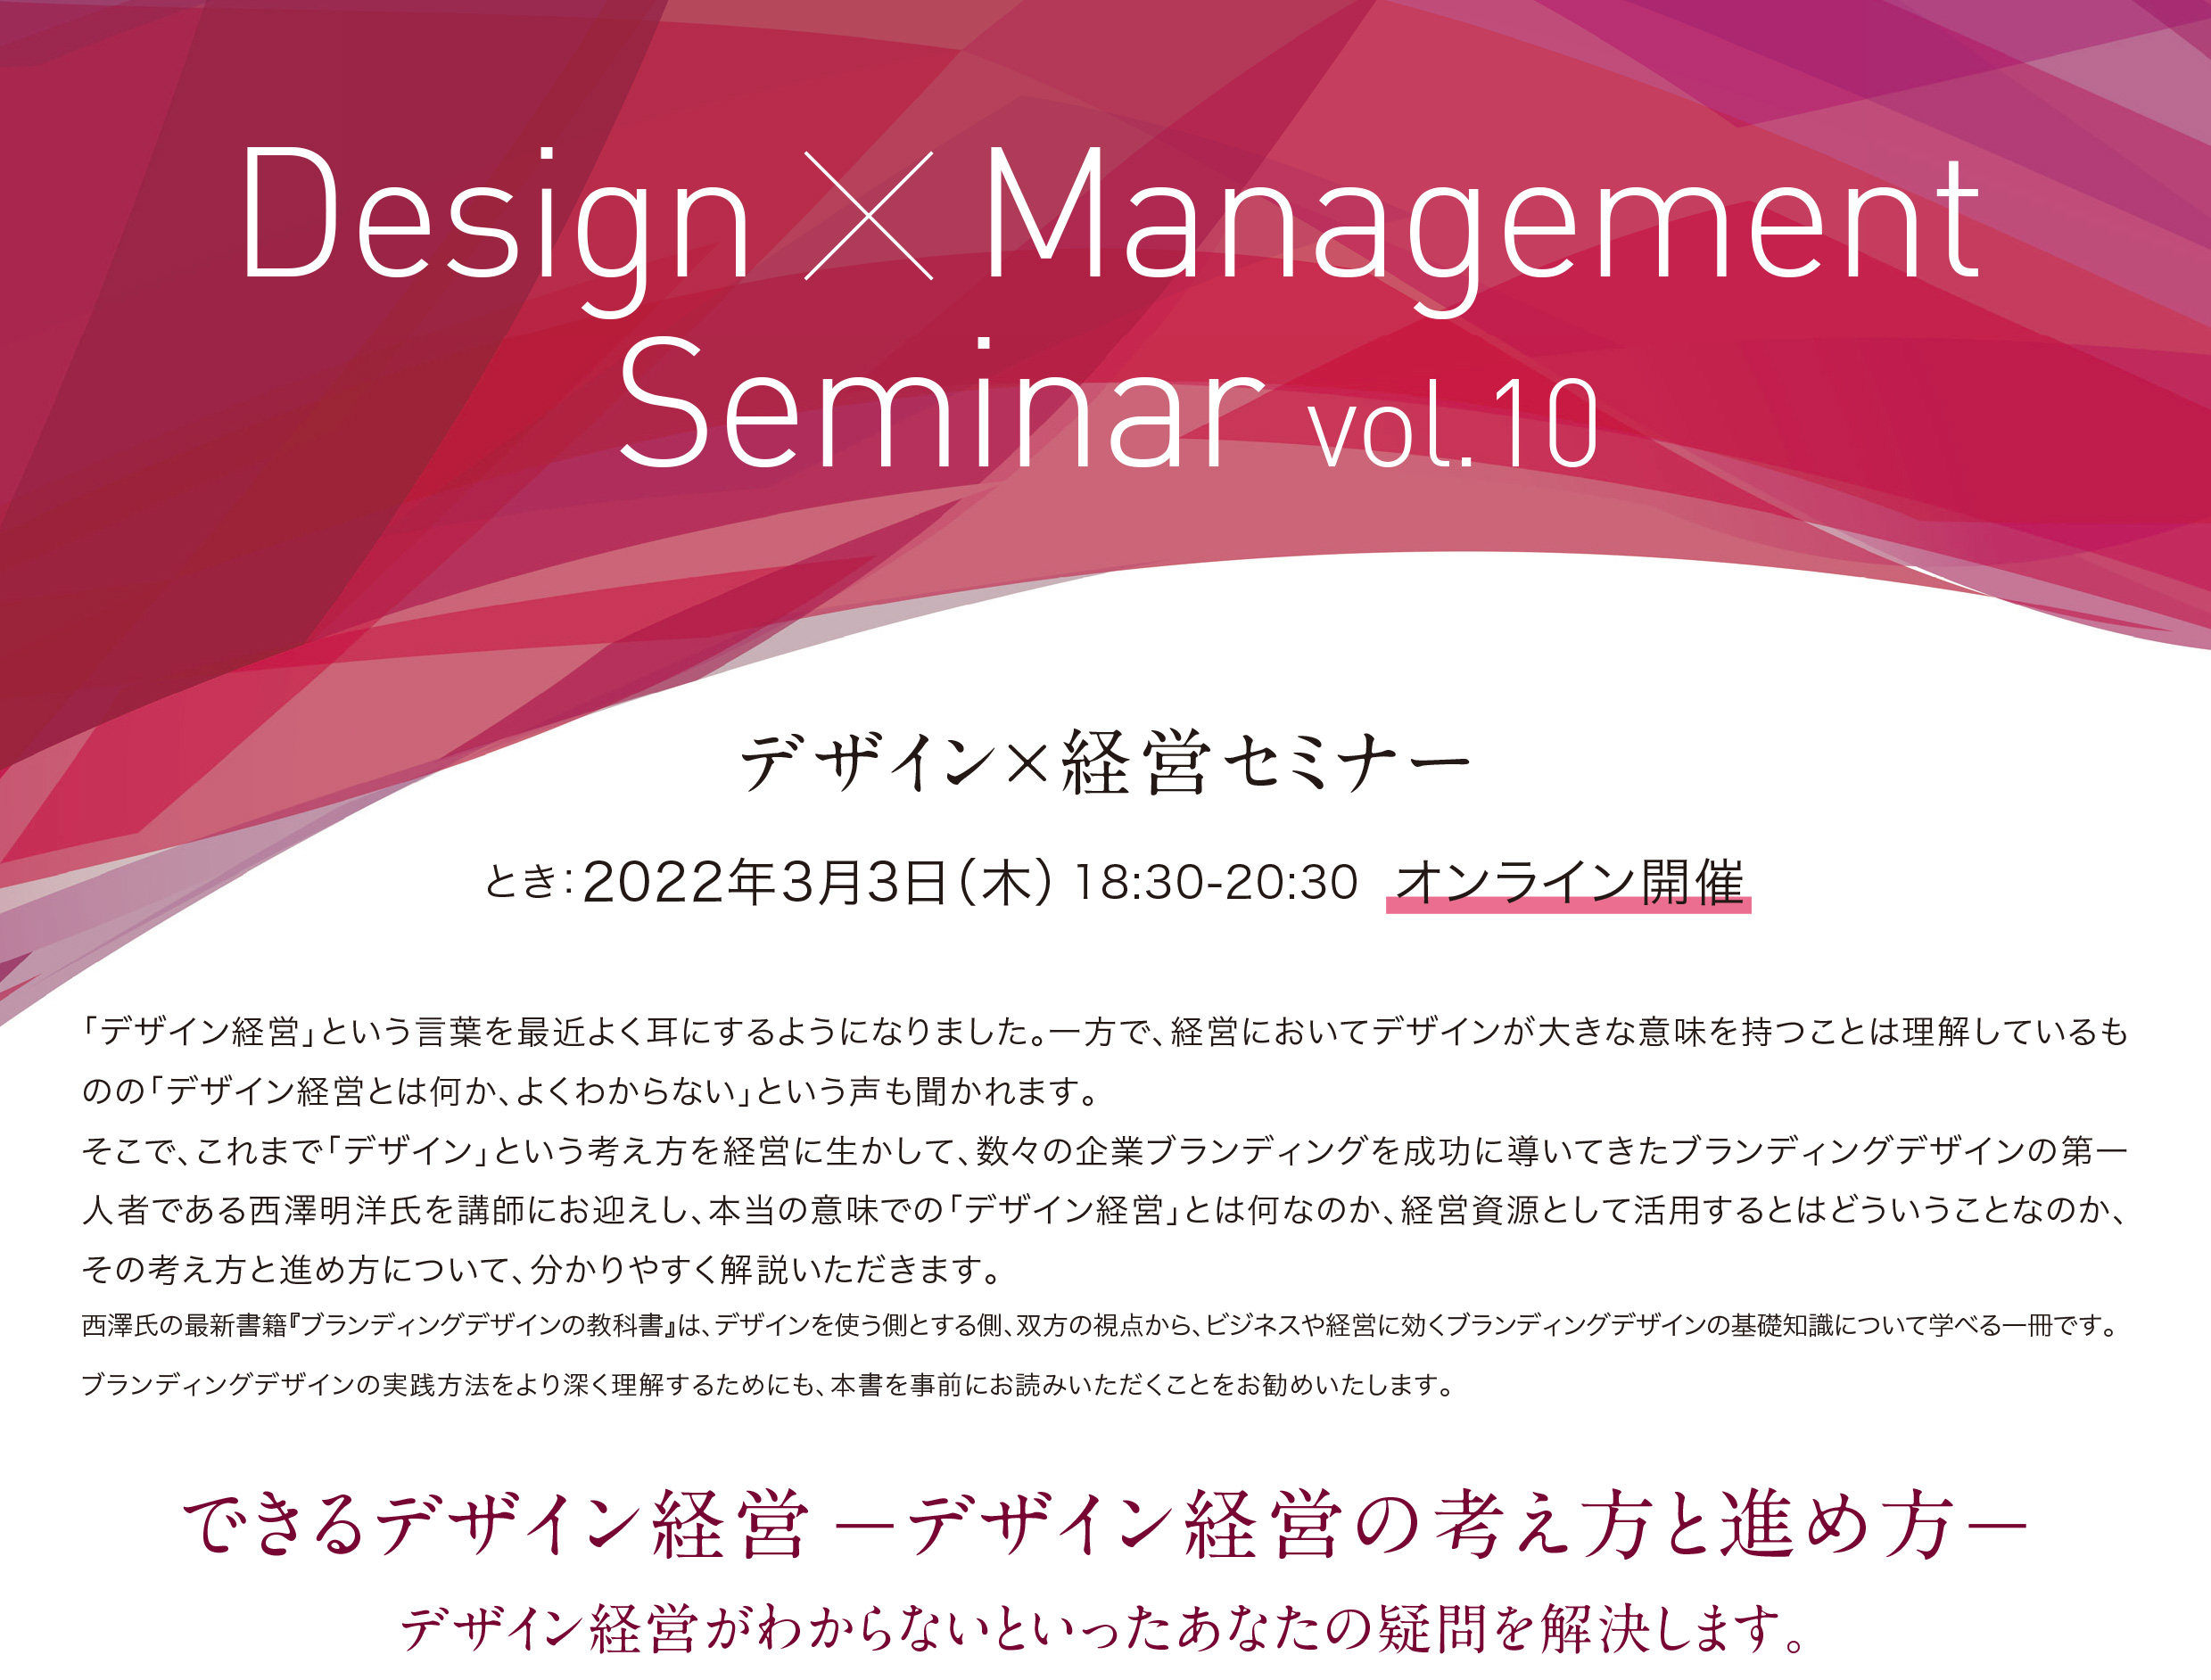 【終了】デザイン×経営セミナー#10「できるデザイン経営 デザイン経営の考え方と進め方」（2/25まで）